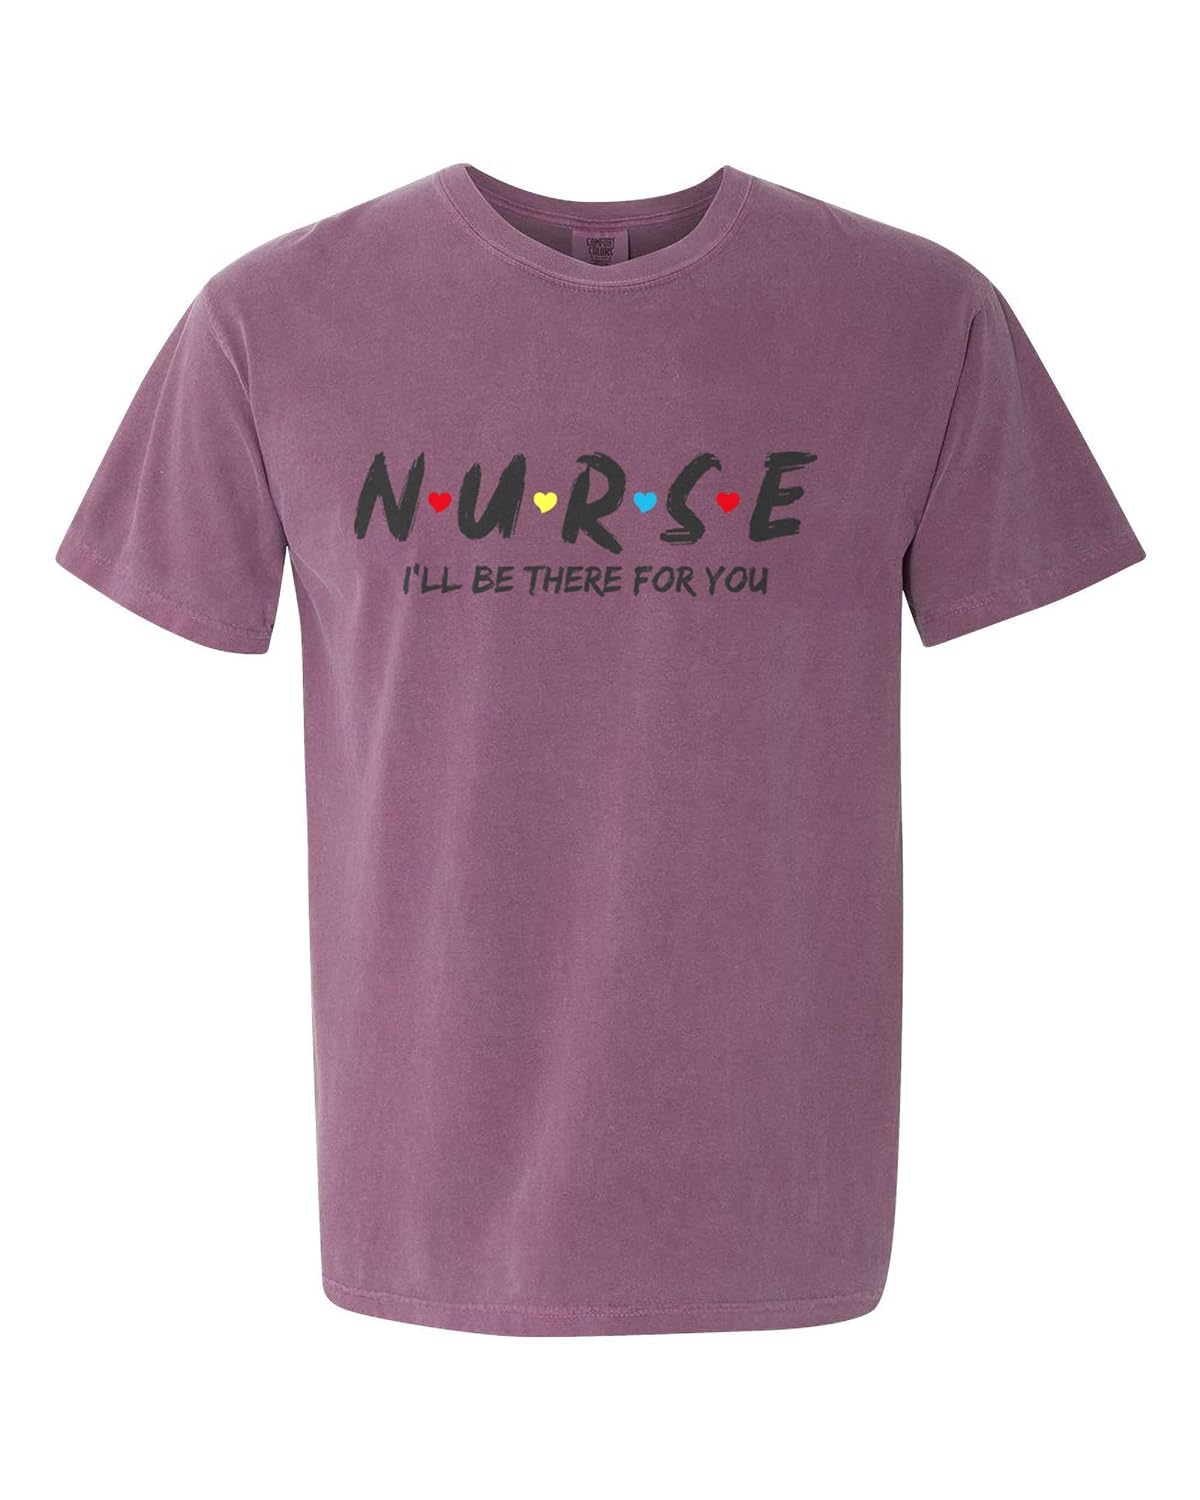 Nurse T Shirt purple color